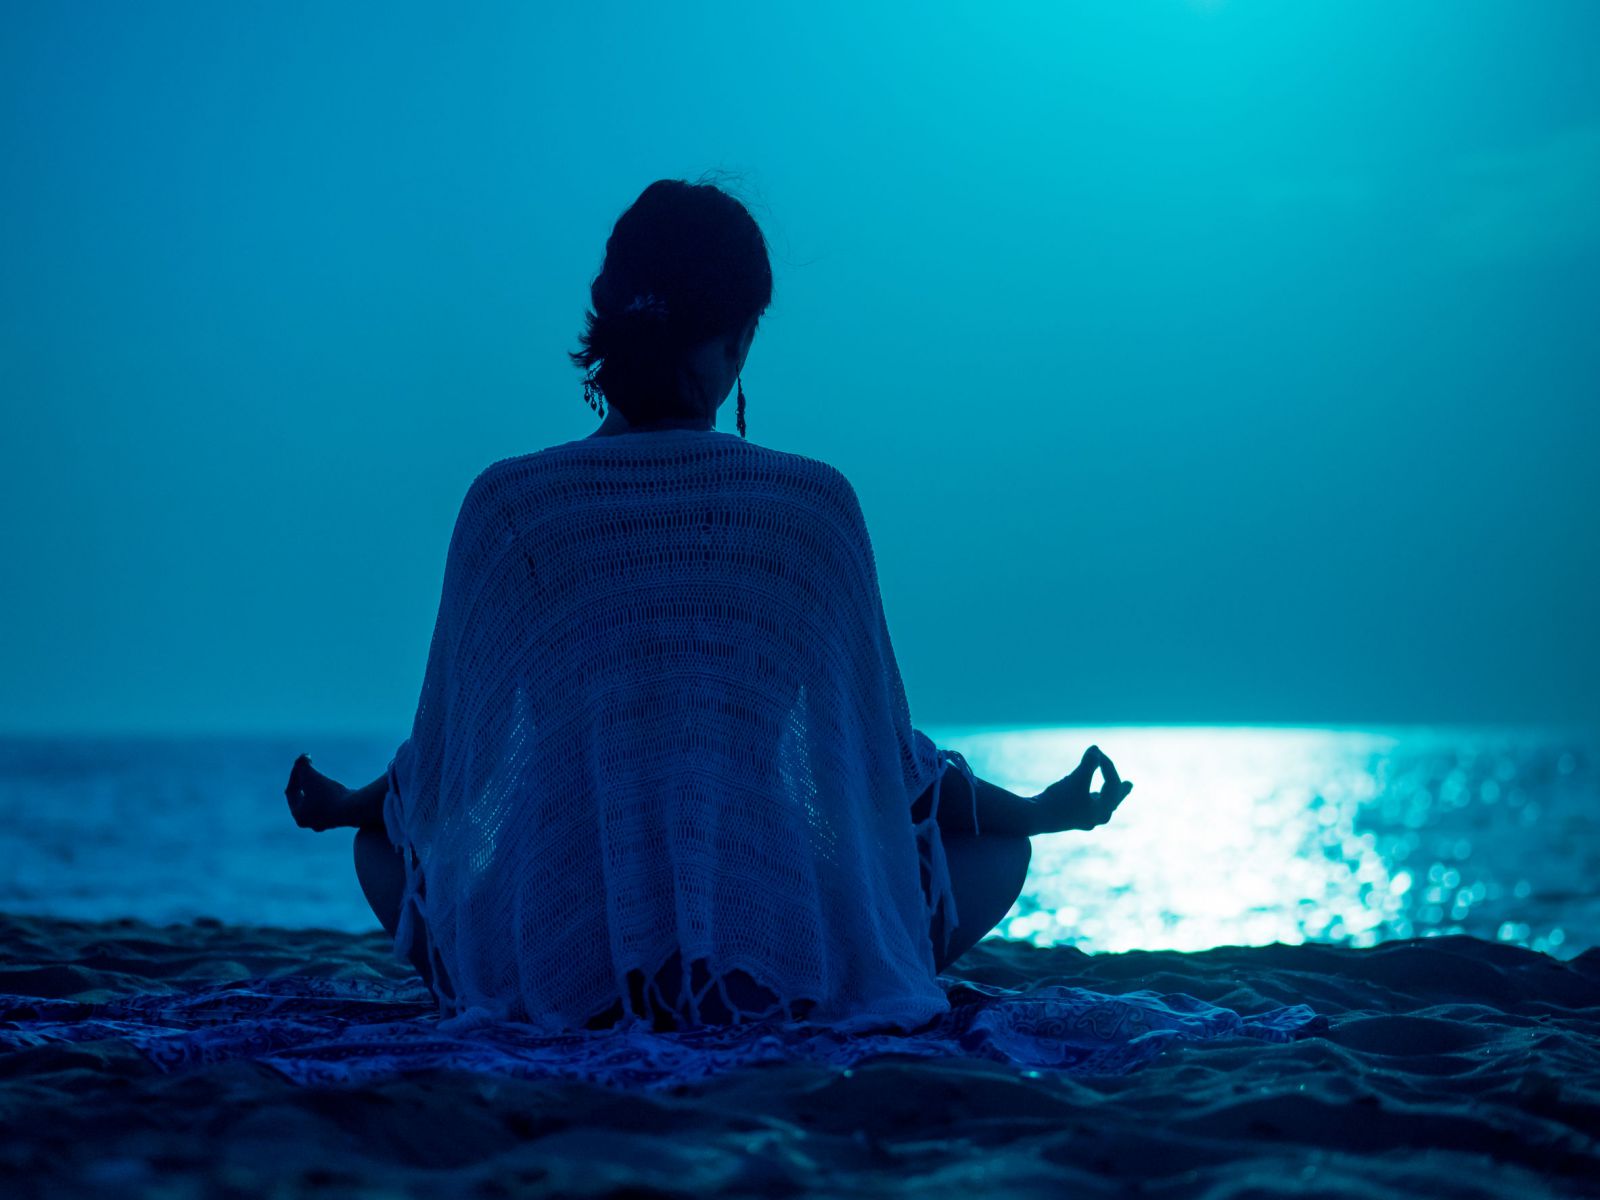 Mulher meditando em frente ao mar com a luz da lua